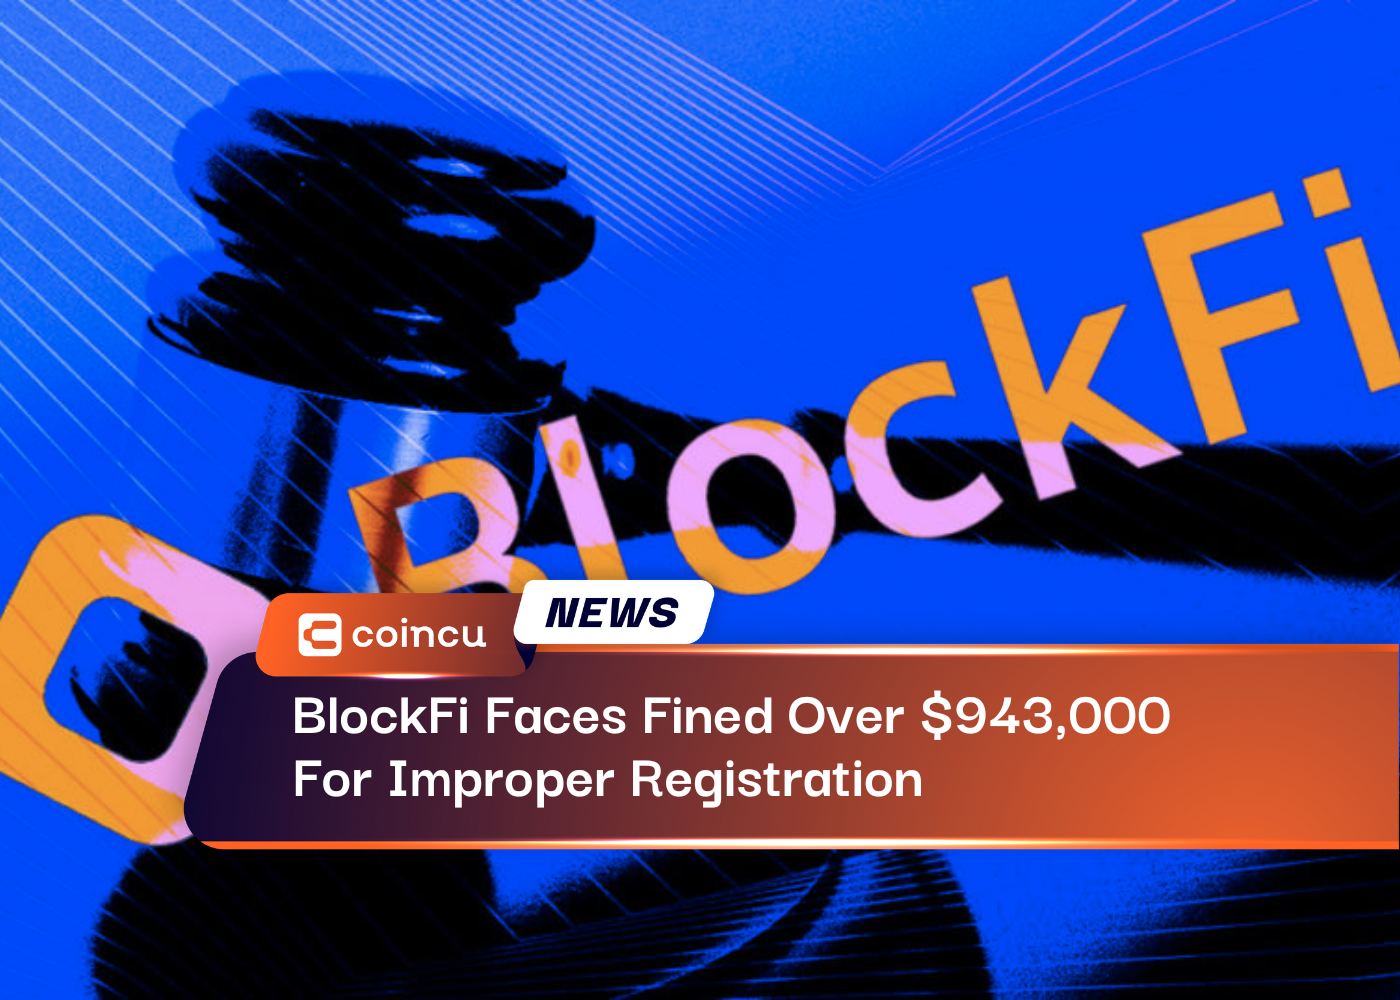 BlockFi Faces Fined Over $943,000 For Improper Registration